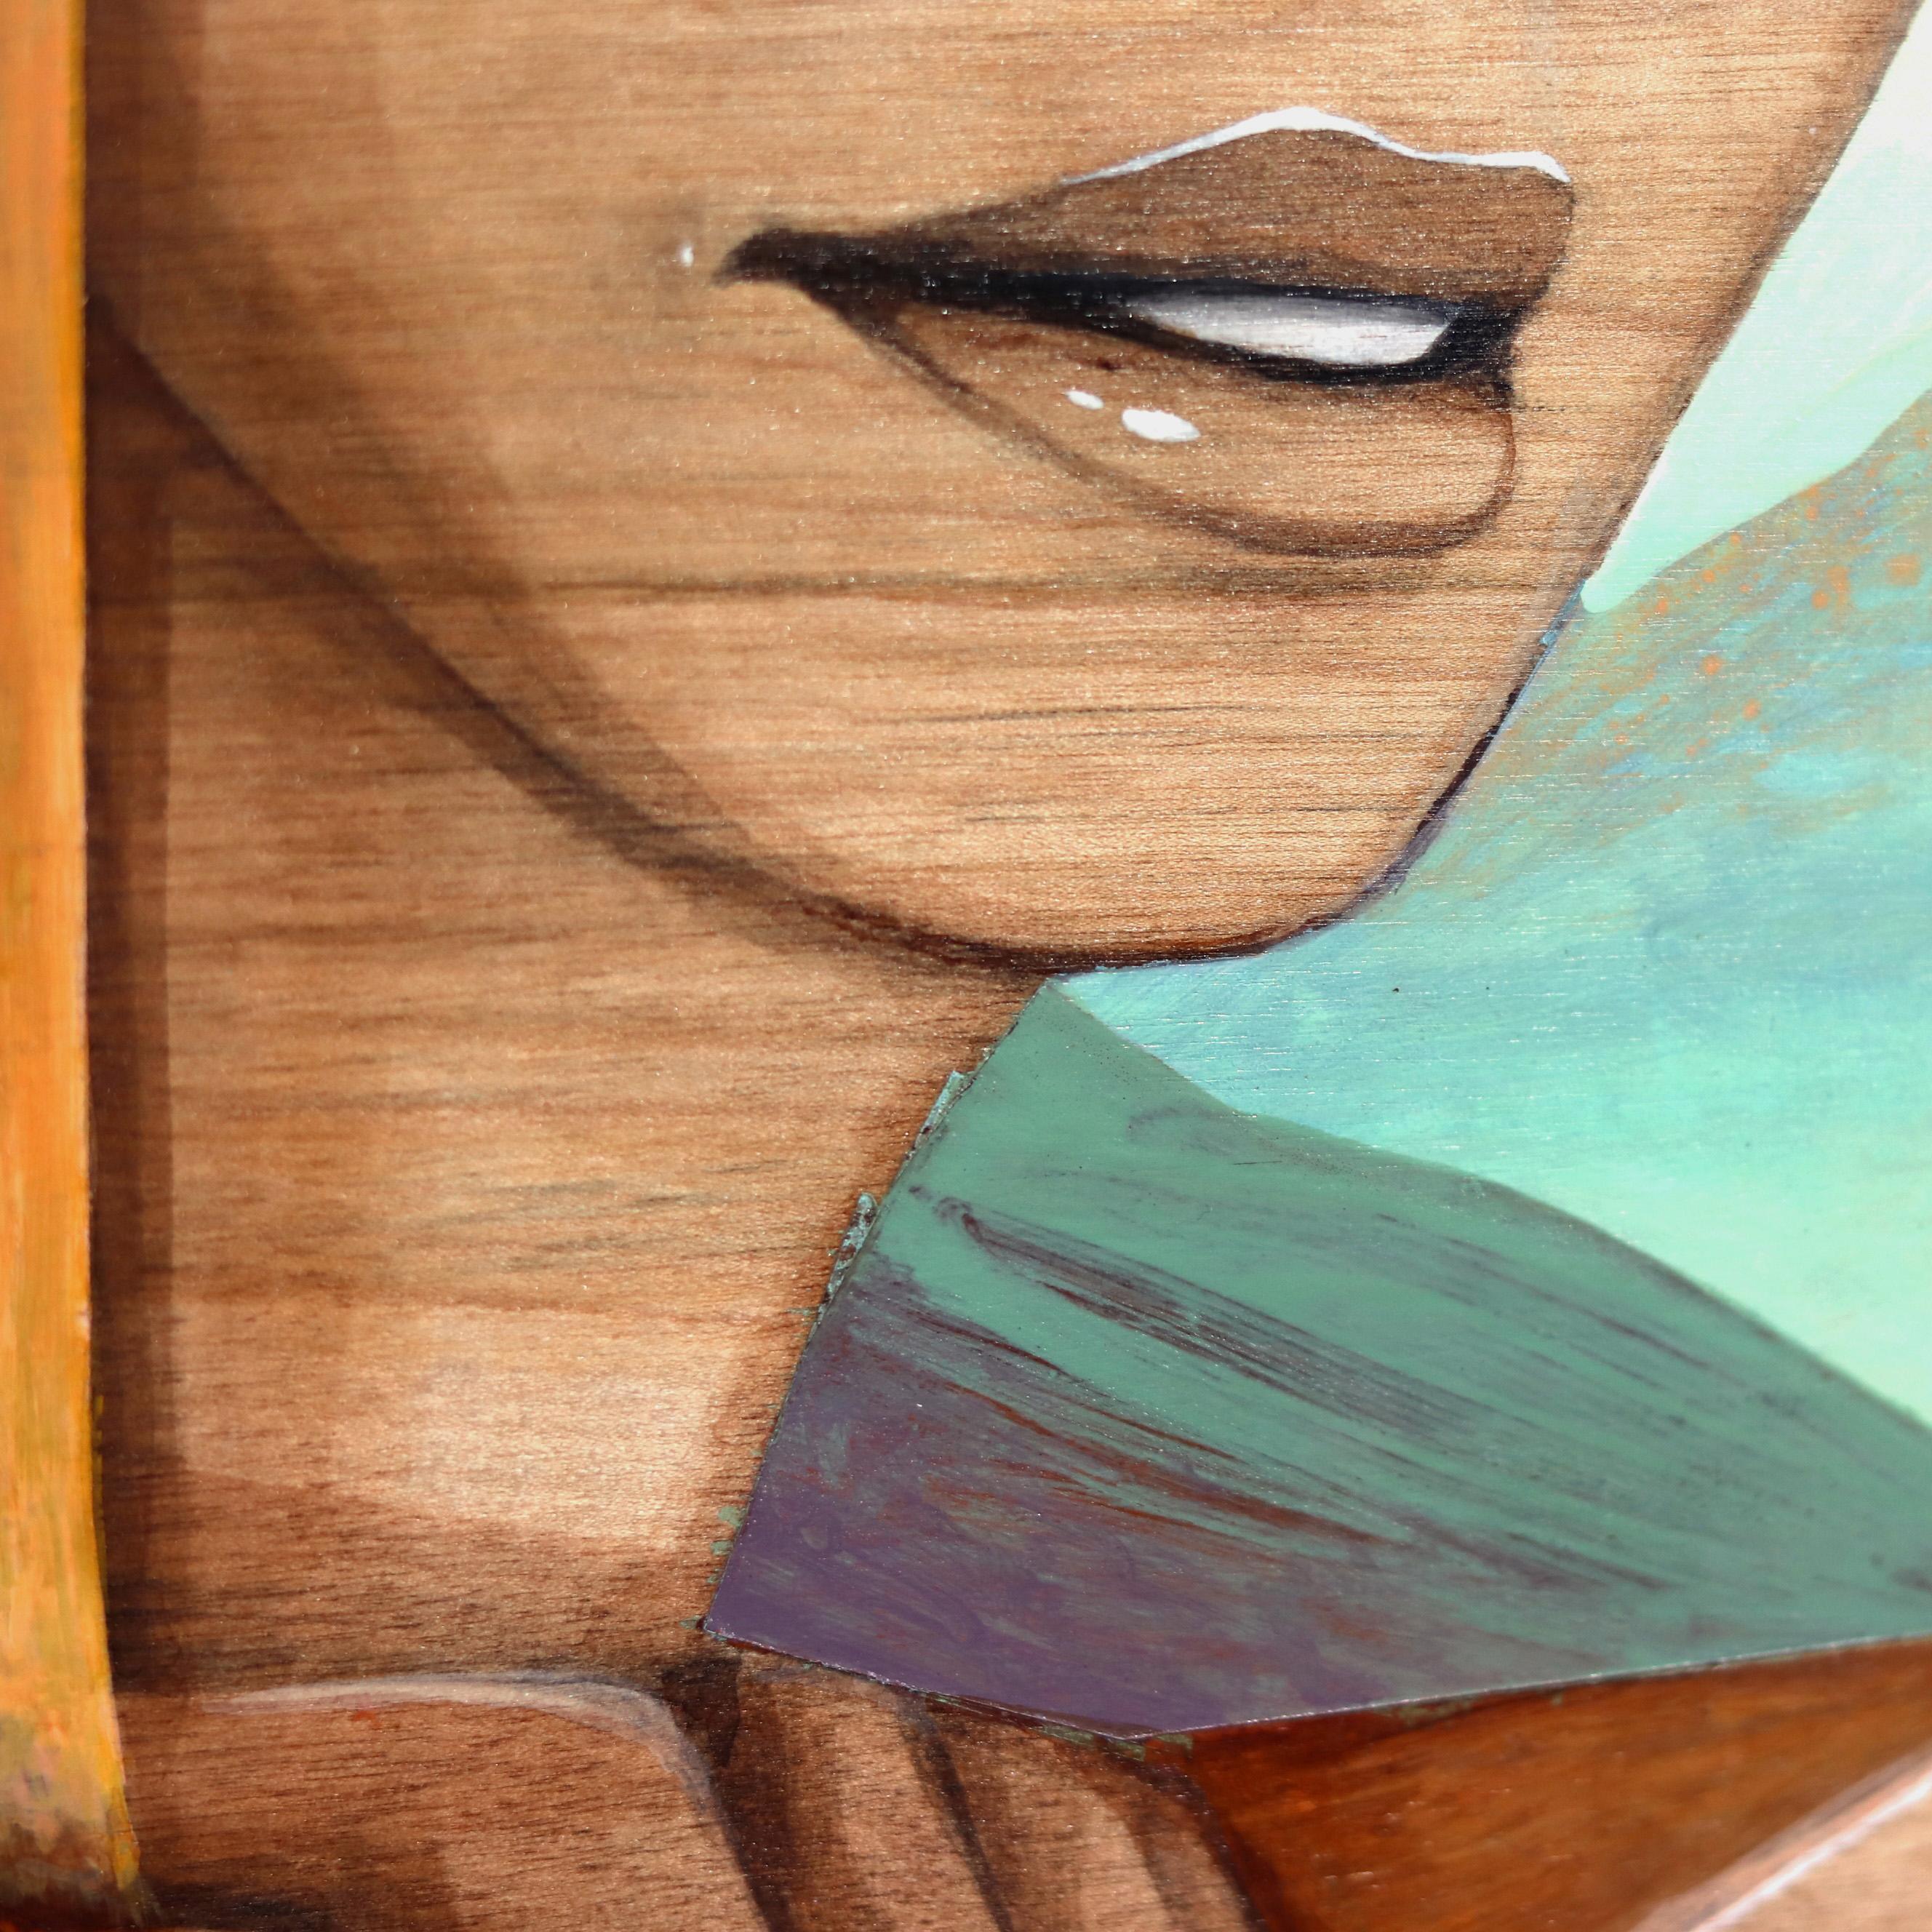 Los retratos figurativos surrealistas sobre madera vista de Eddy Lee representan emotivas sirenas que evocan una sensación de misterio y seducción. Sus originales obras de arte combinan elementos geométricos con retratos de mujeres inocentes que